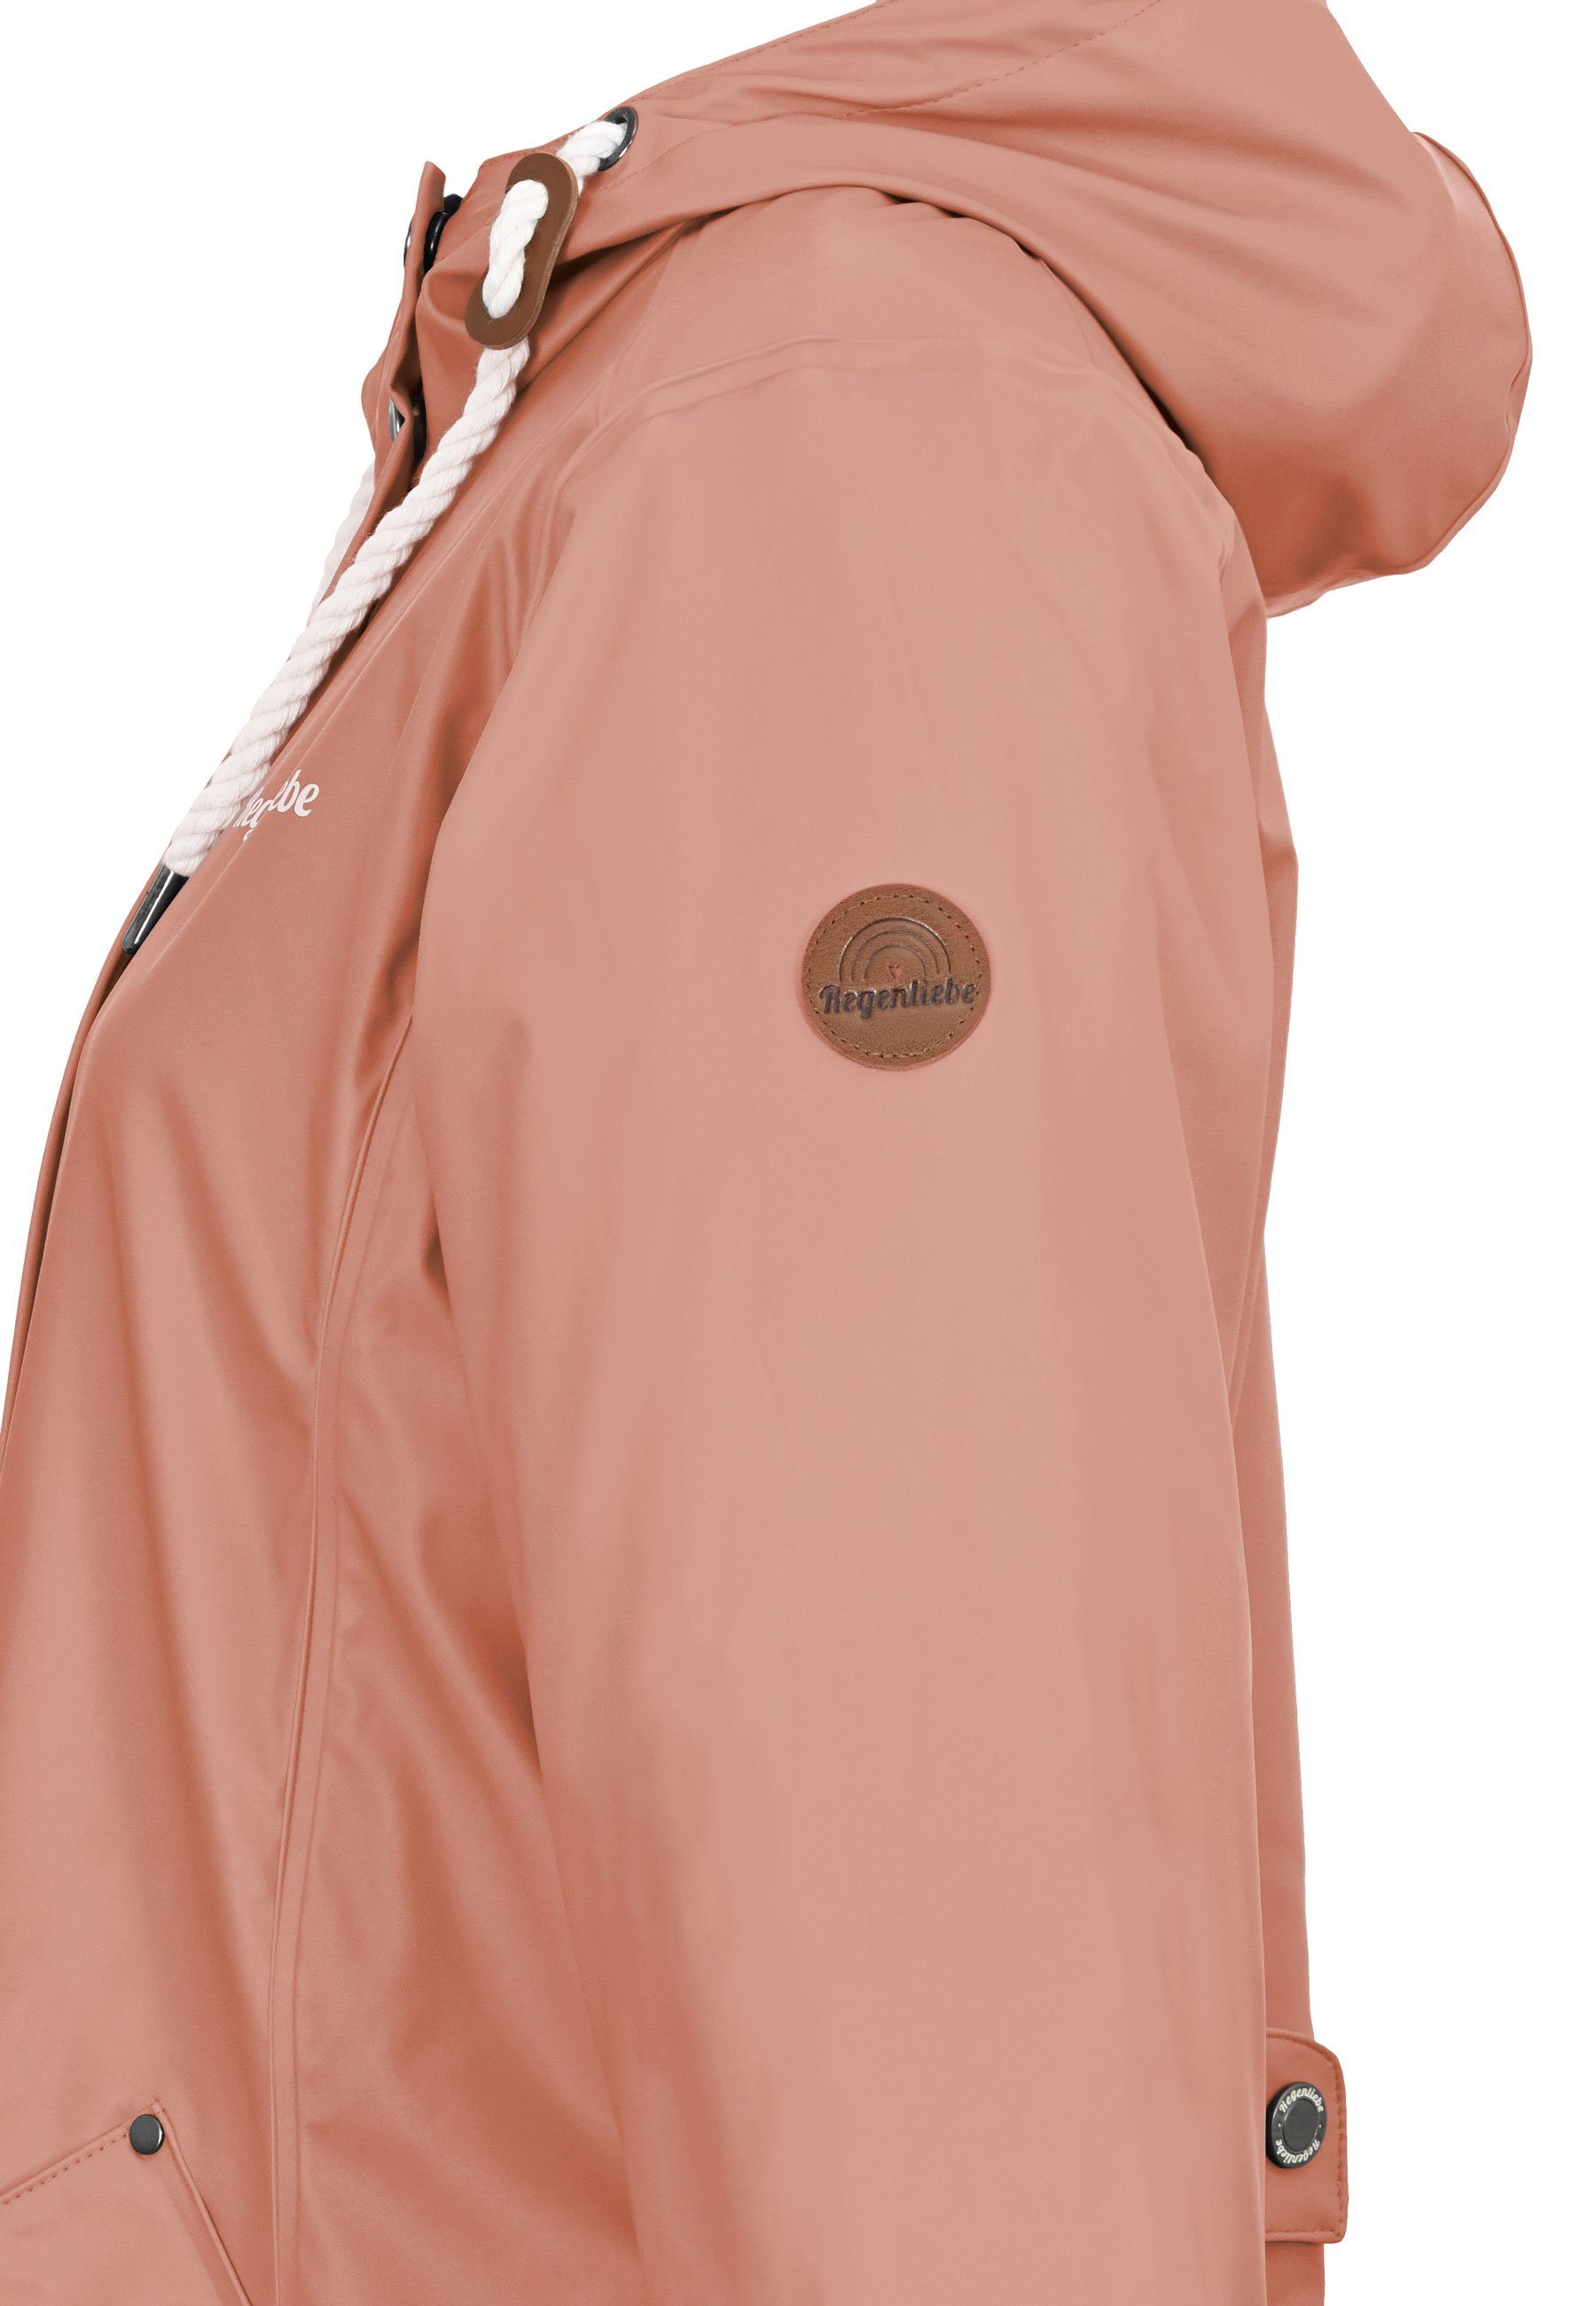 Regenliebe Regenjacke Friesennerz taillierter alt-rosa Kapuze mit verstellbaren Regenmantel